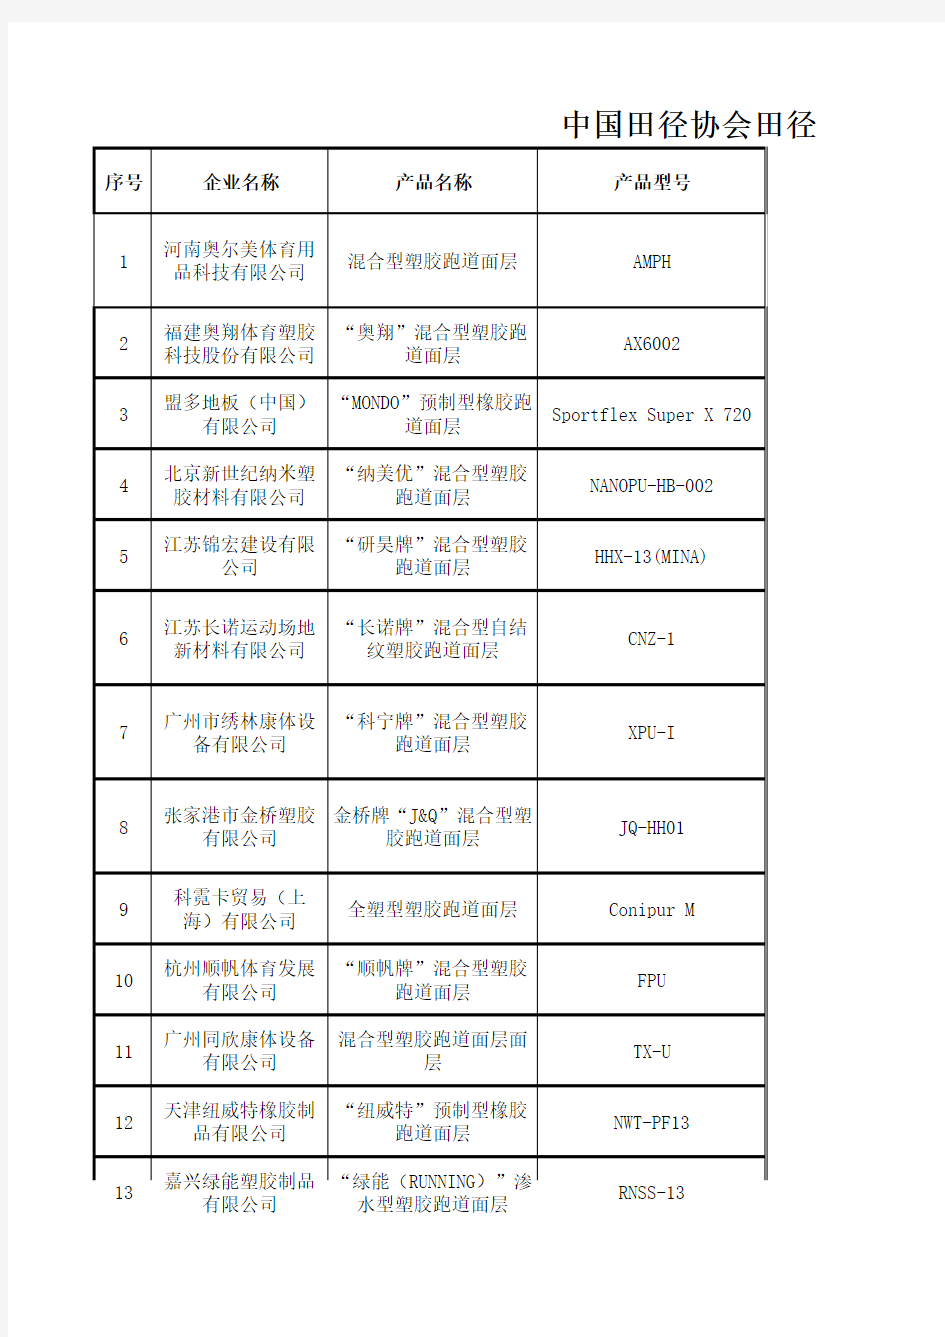 中国田径协会田径跑道面层产品审定名录(2017.7.7)